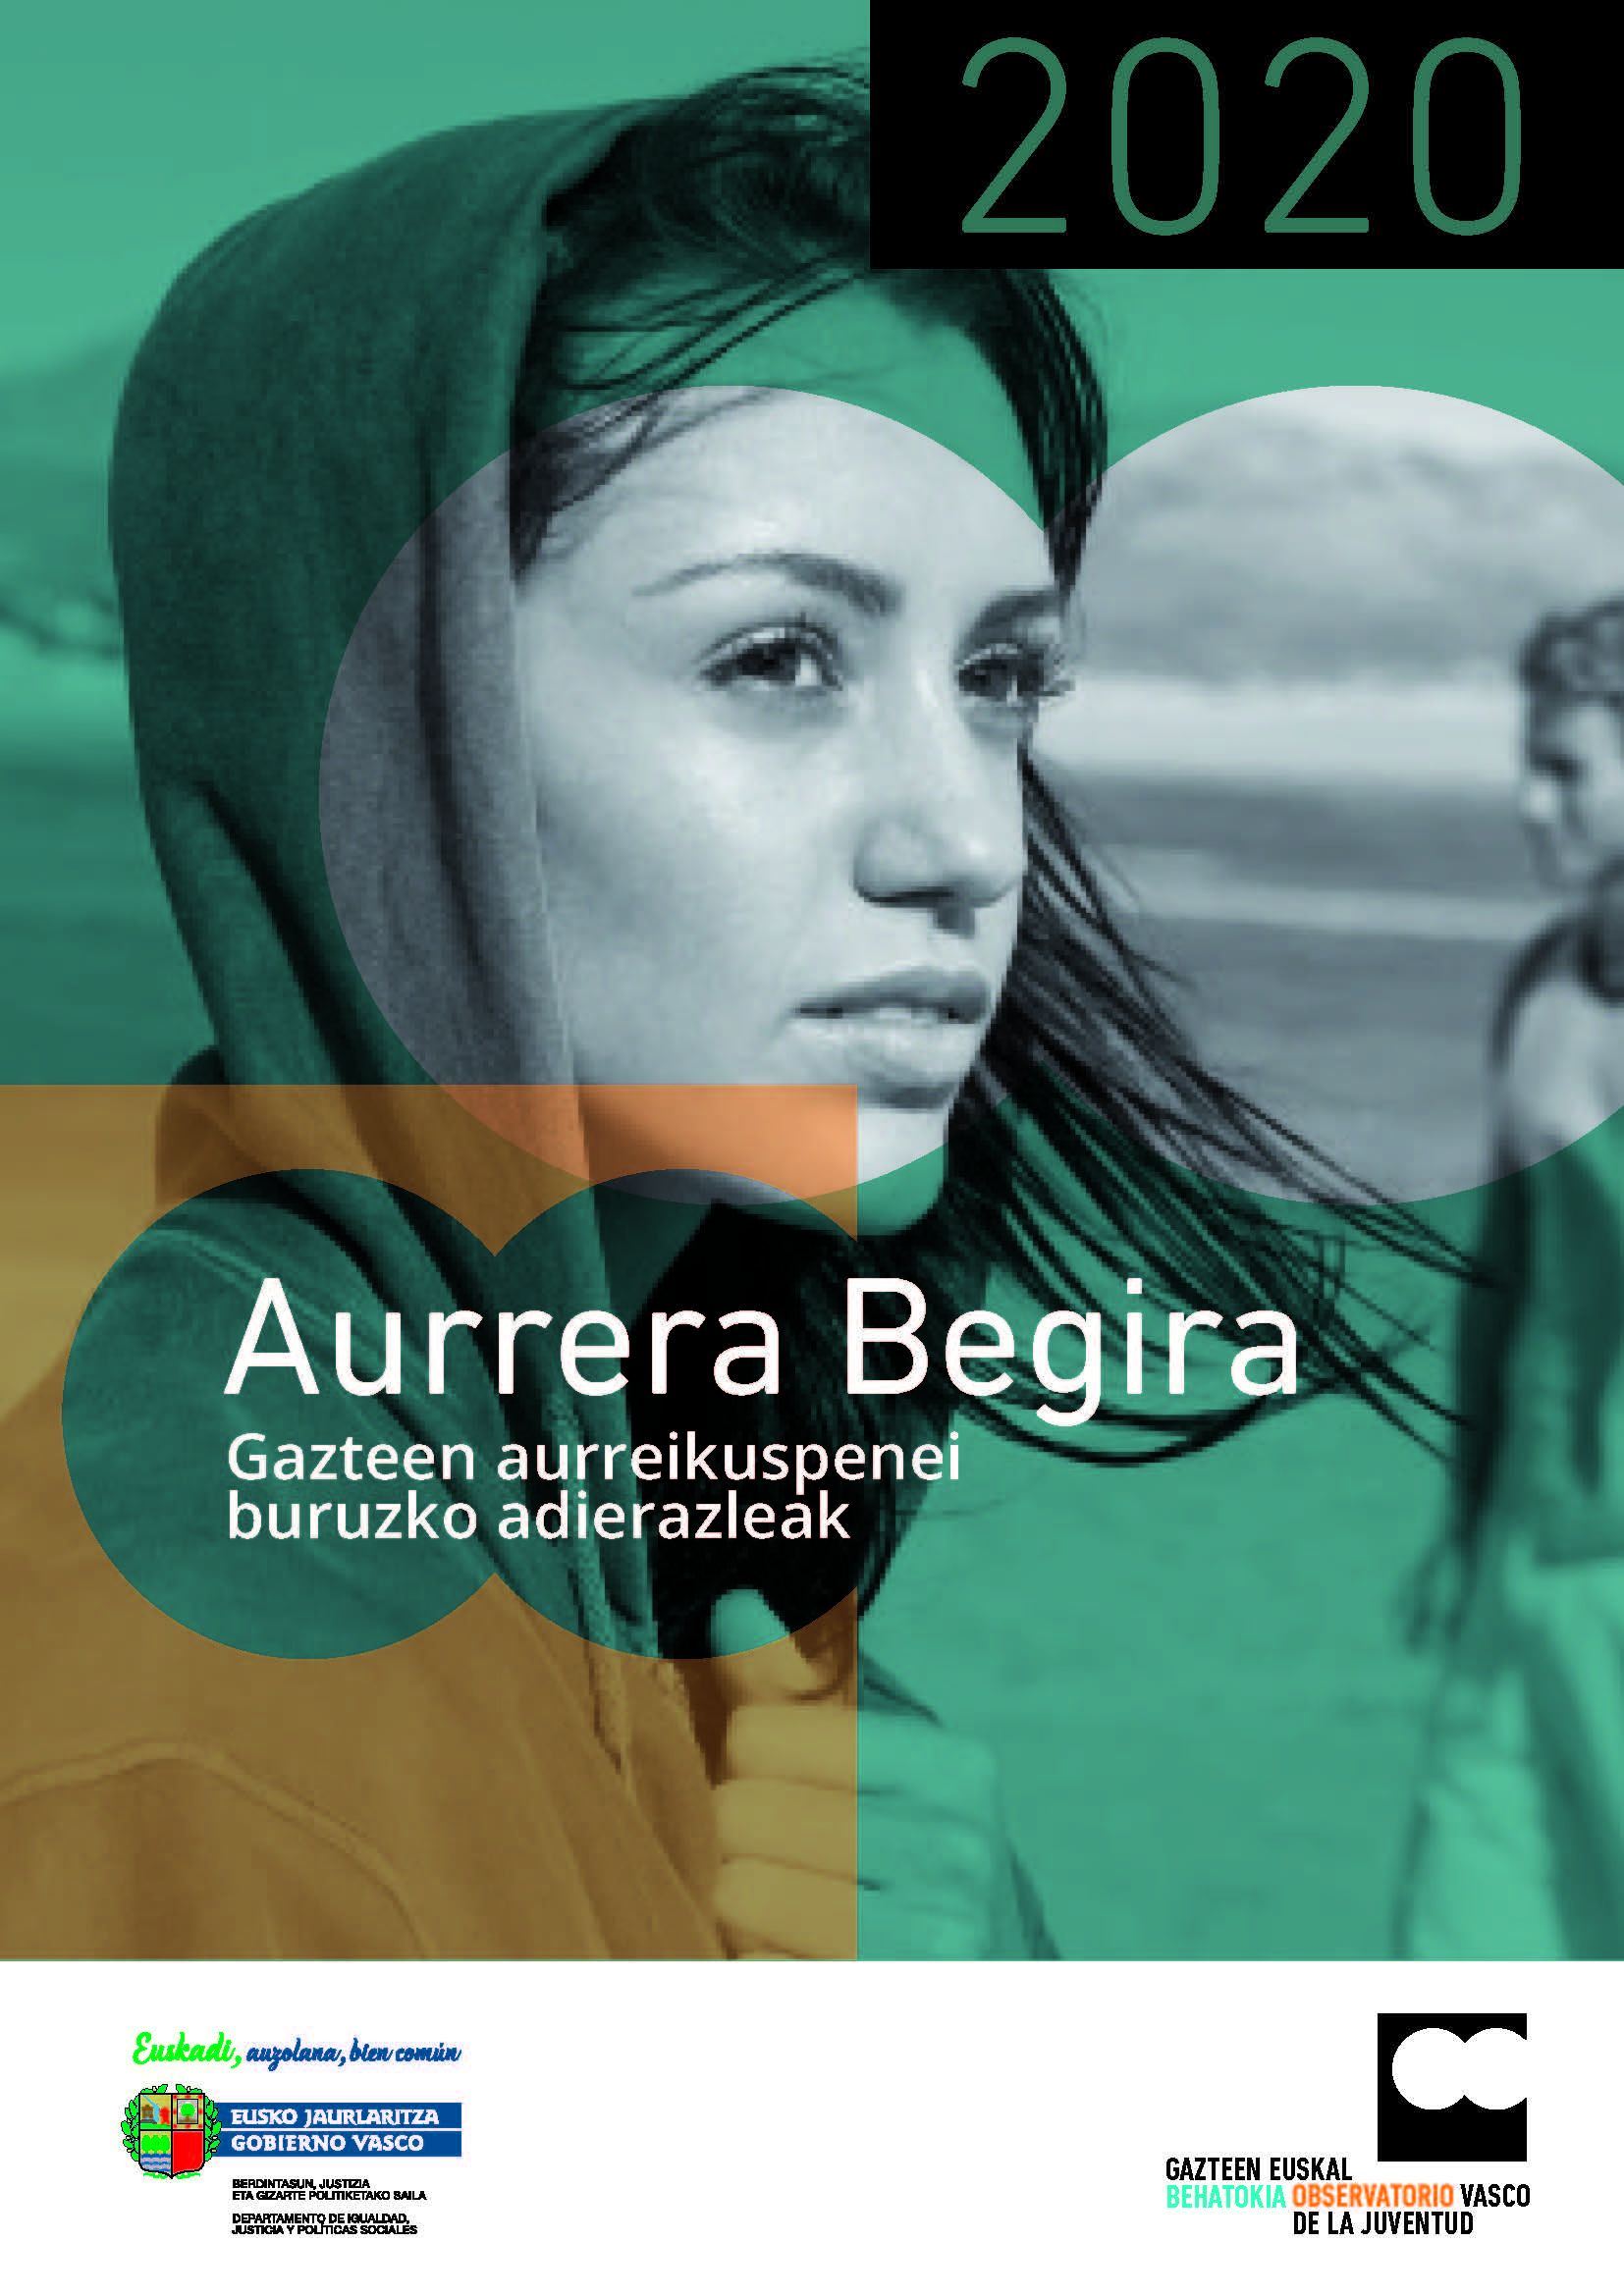 Aurrera Begira 2020. Gazteen aurreikuspenei buruzko adierazleak